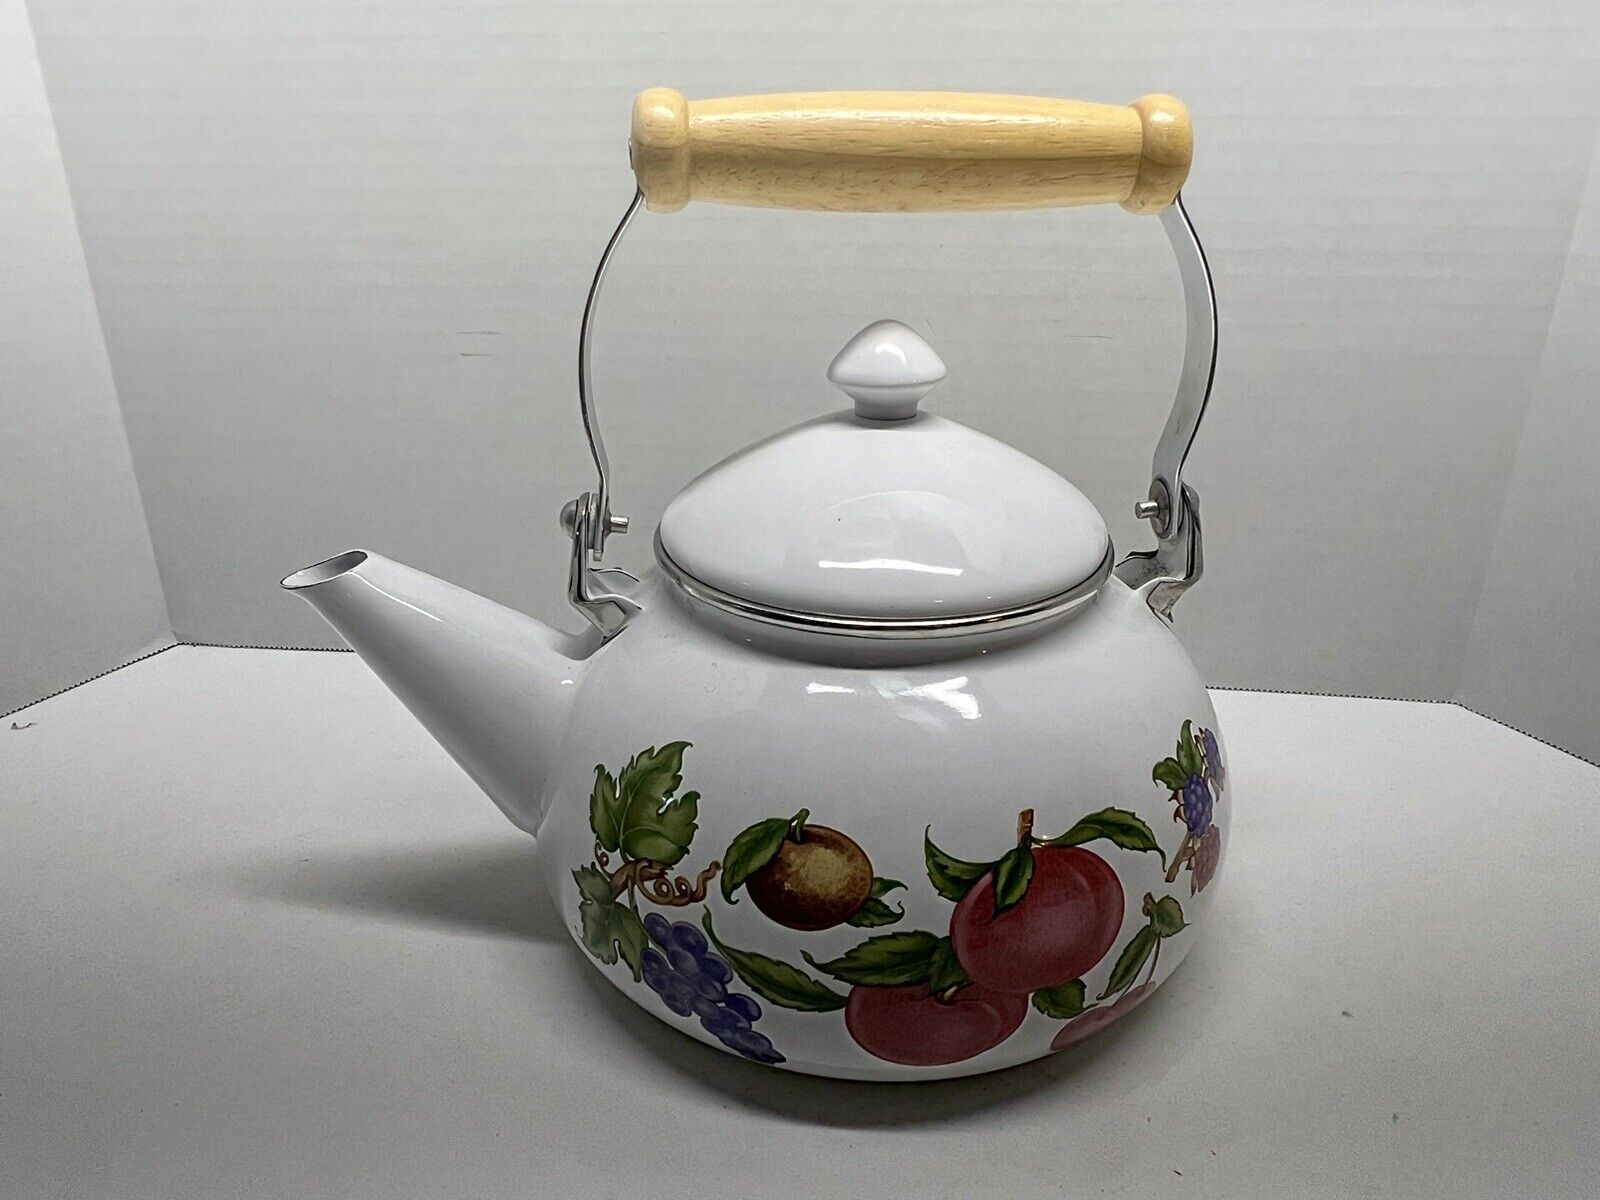 Vintage Enamel Tea Water Kettle Hand Painted Fruit Large Stovetop Cream Wood